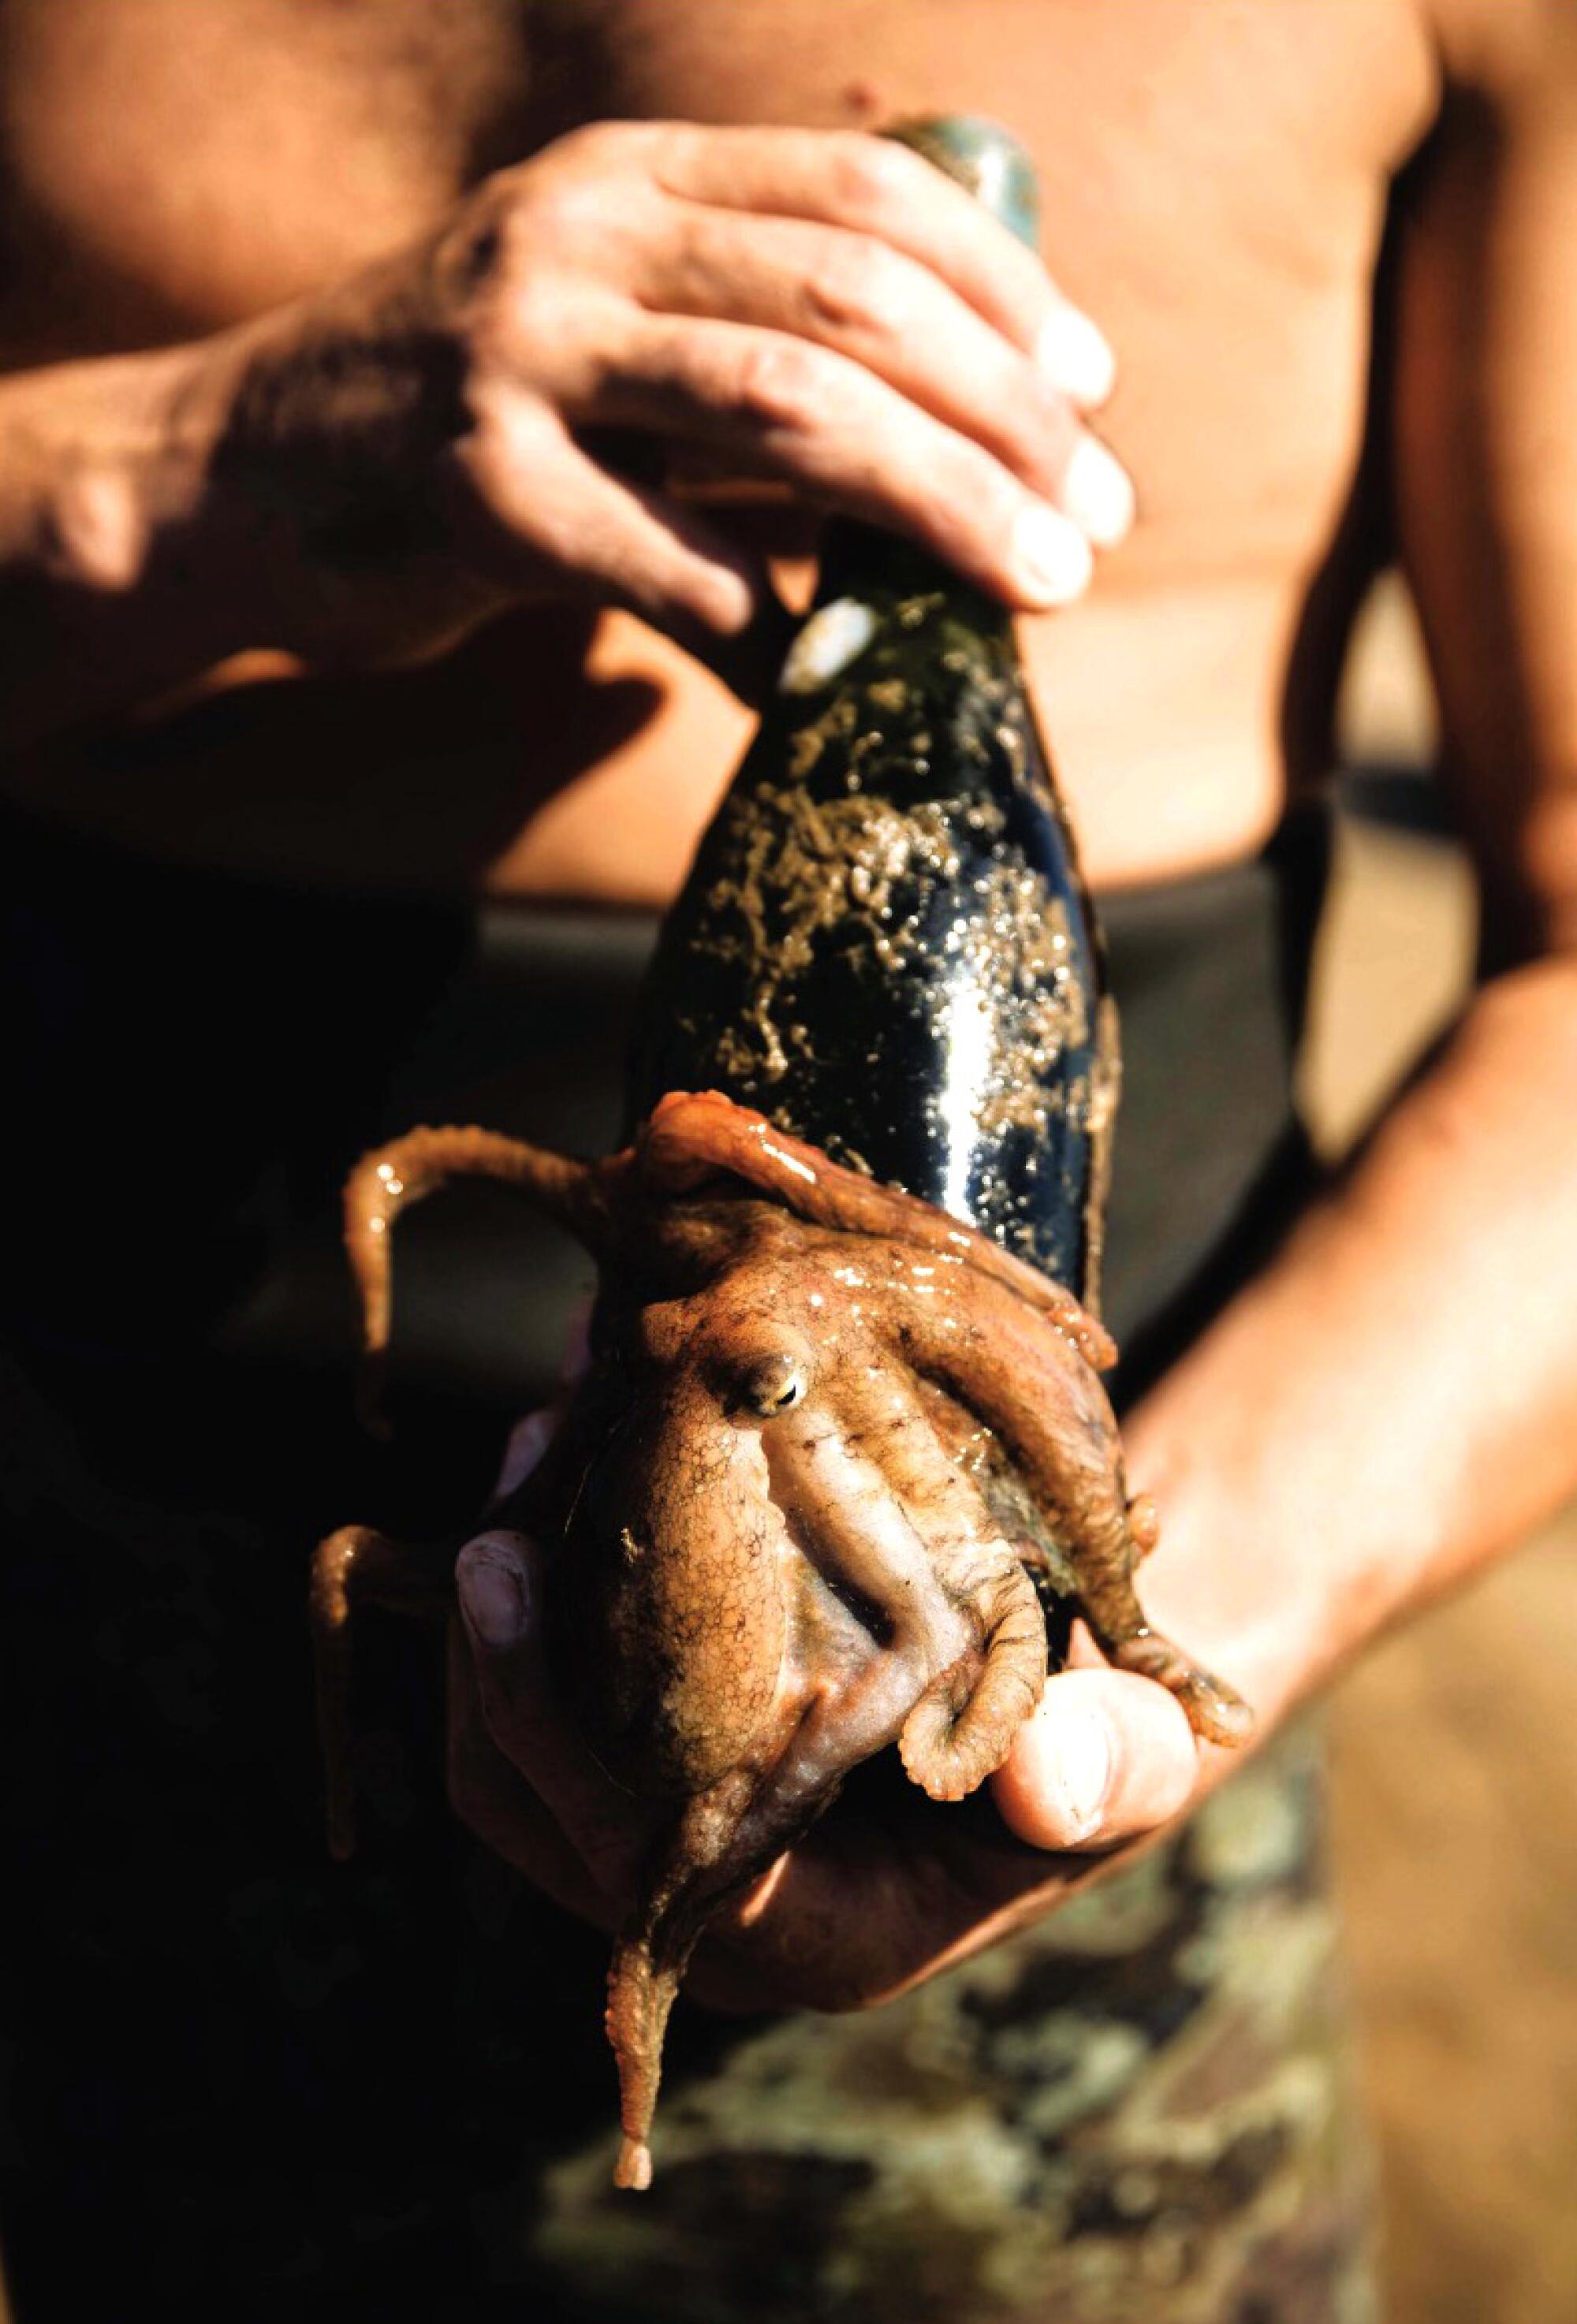 An octopus covers an Ocean Fathoms wine bottle.